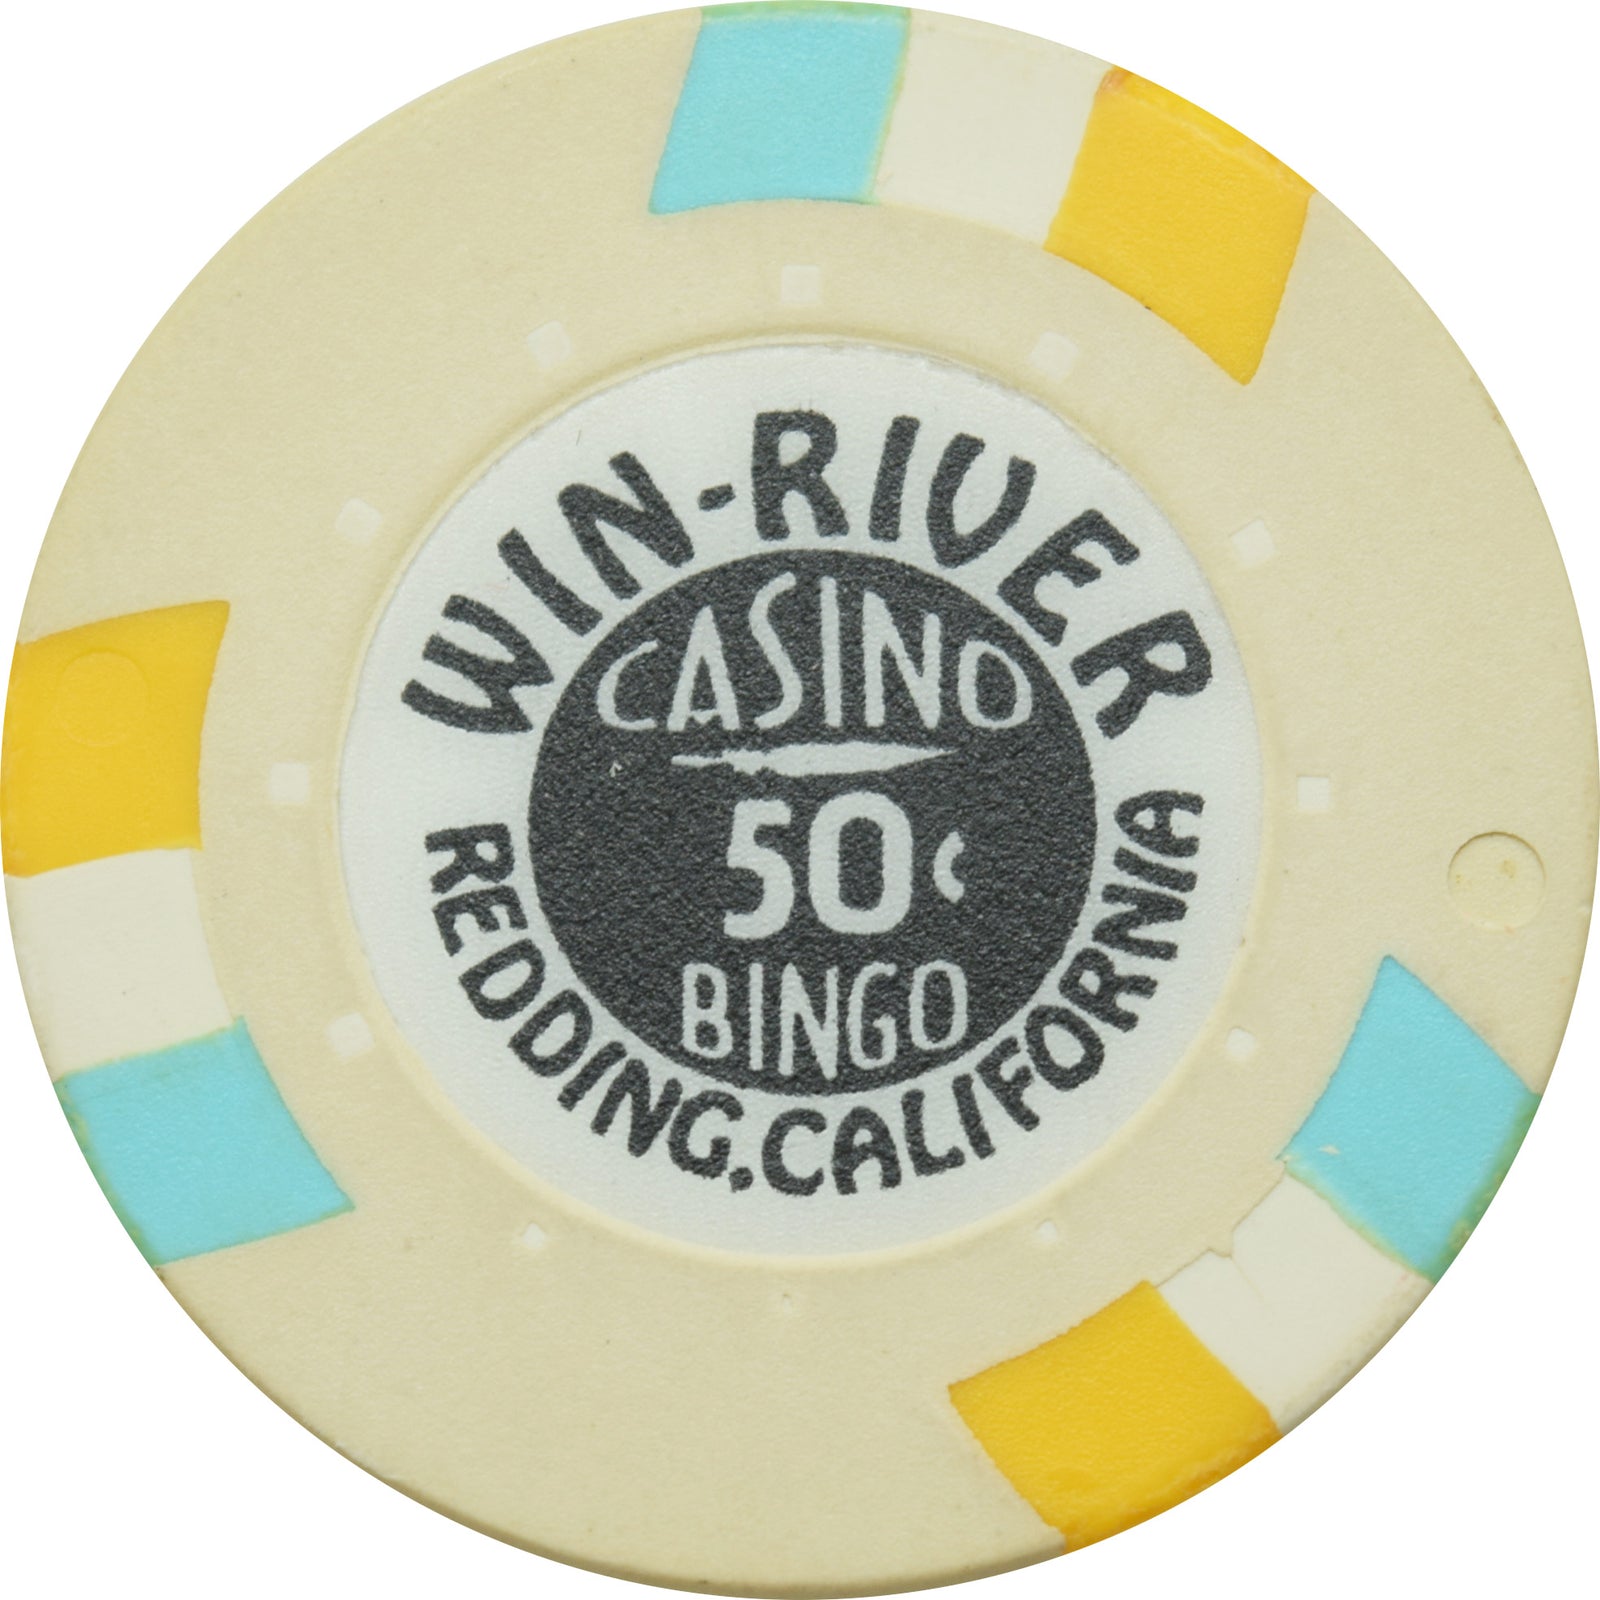 win river casino redding california directions